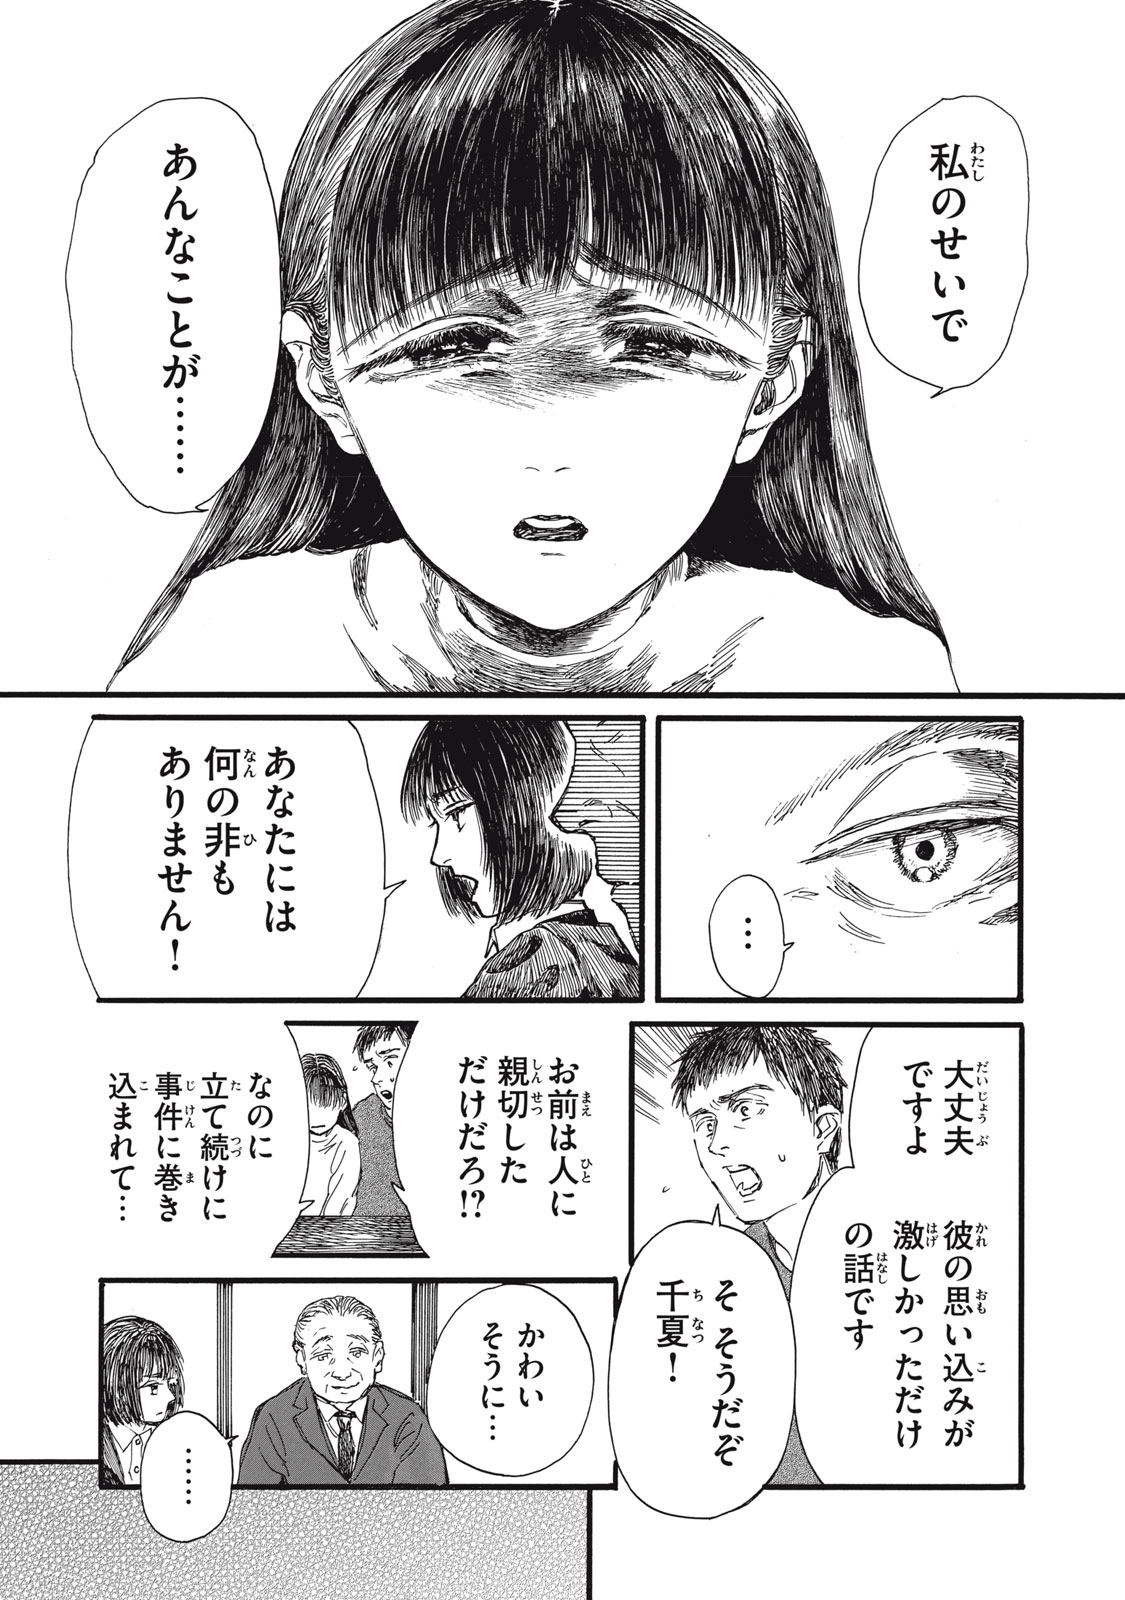 Watashi no Hara no Naka no Bakemono - Chapter 38 - Page 11